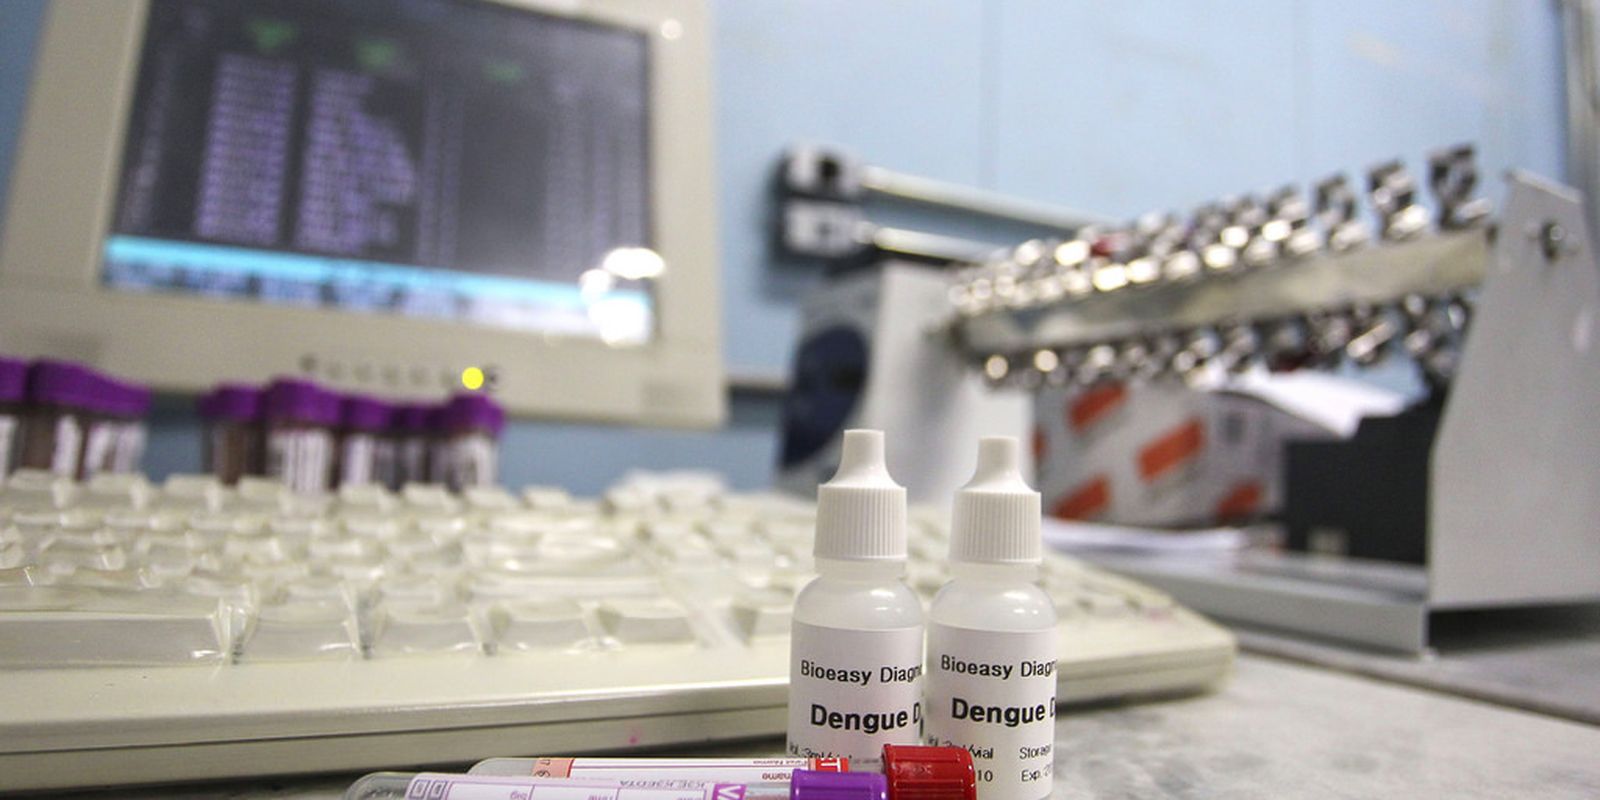 precos-do-exame-de-dengue-variam-ate-276%-entre-laboratorios-do-rio